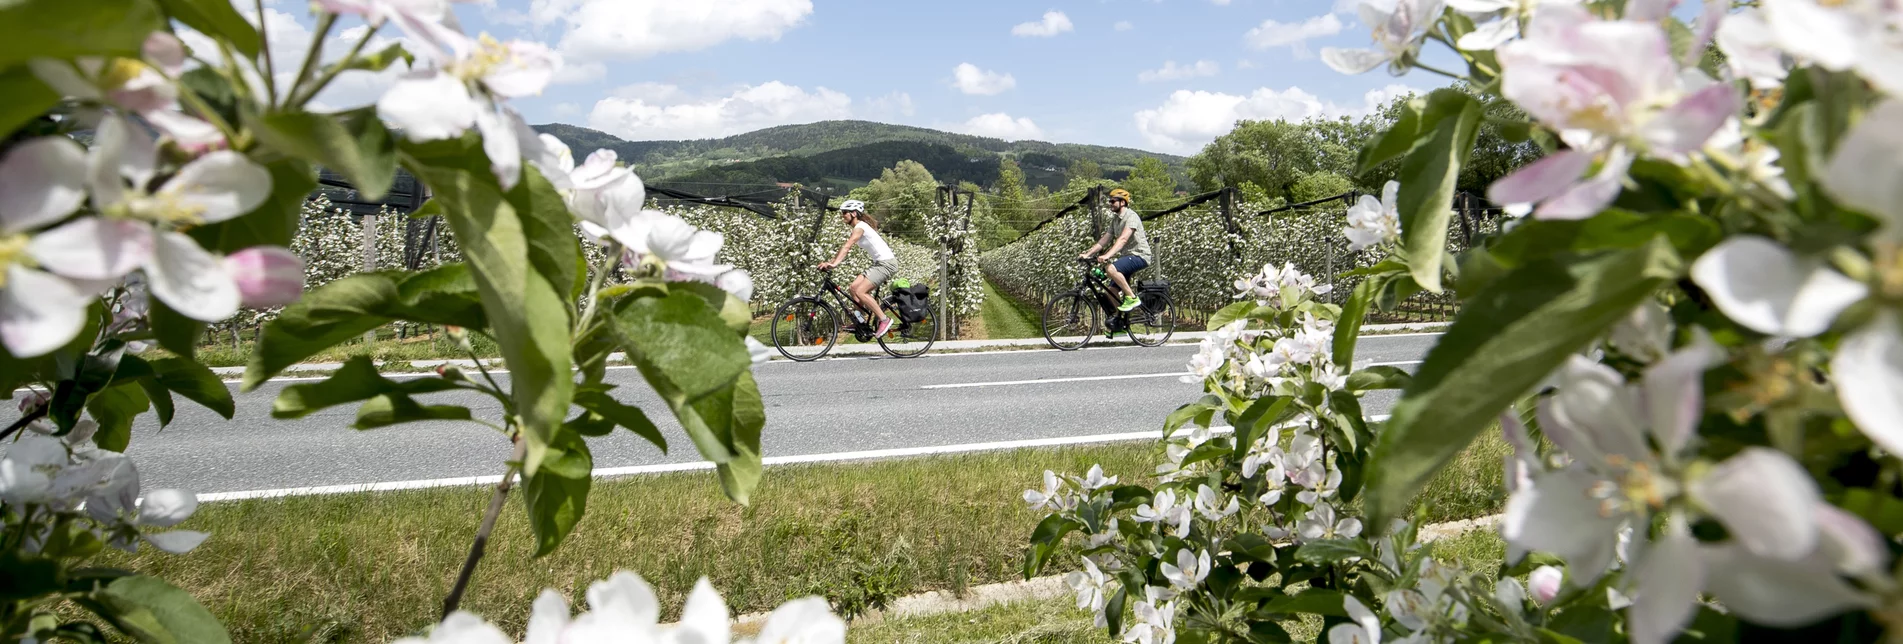 Radfahren im Apfelland auf der Weinland Steiermark Radtour nahe Puch | © STG | Tom Lamm